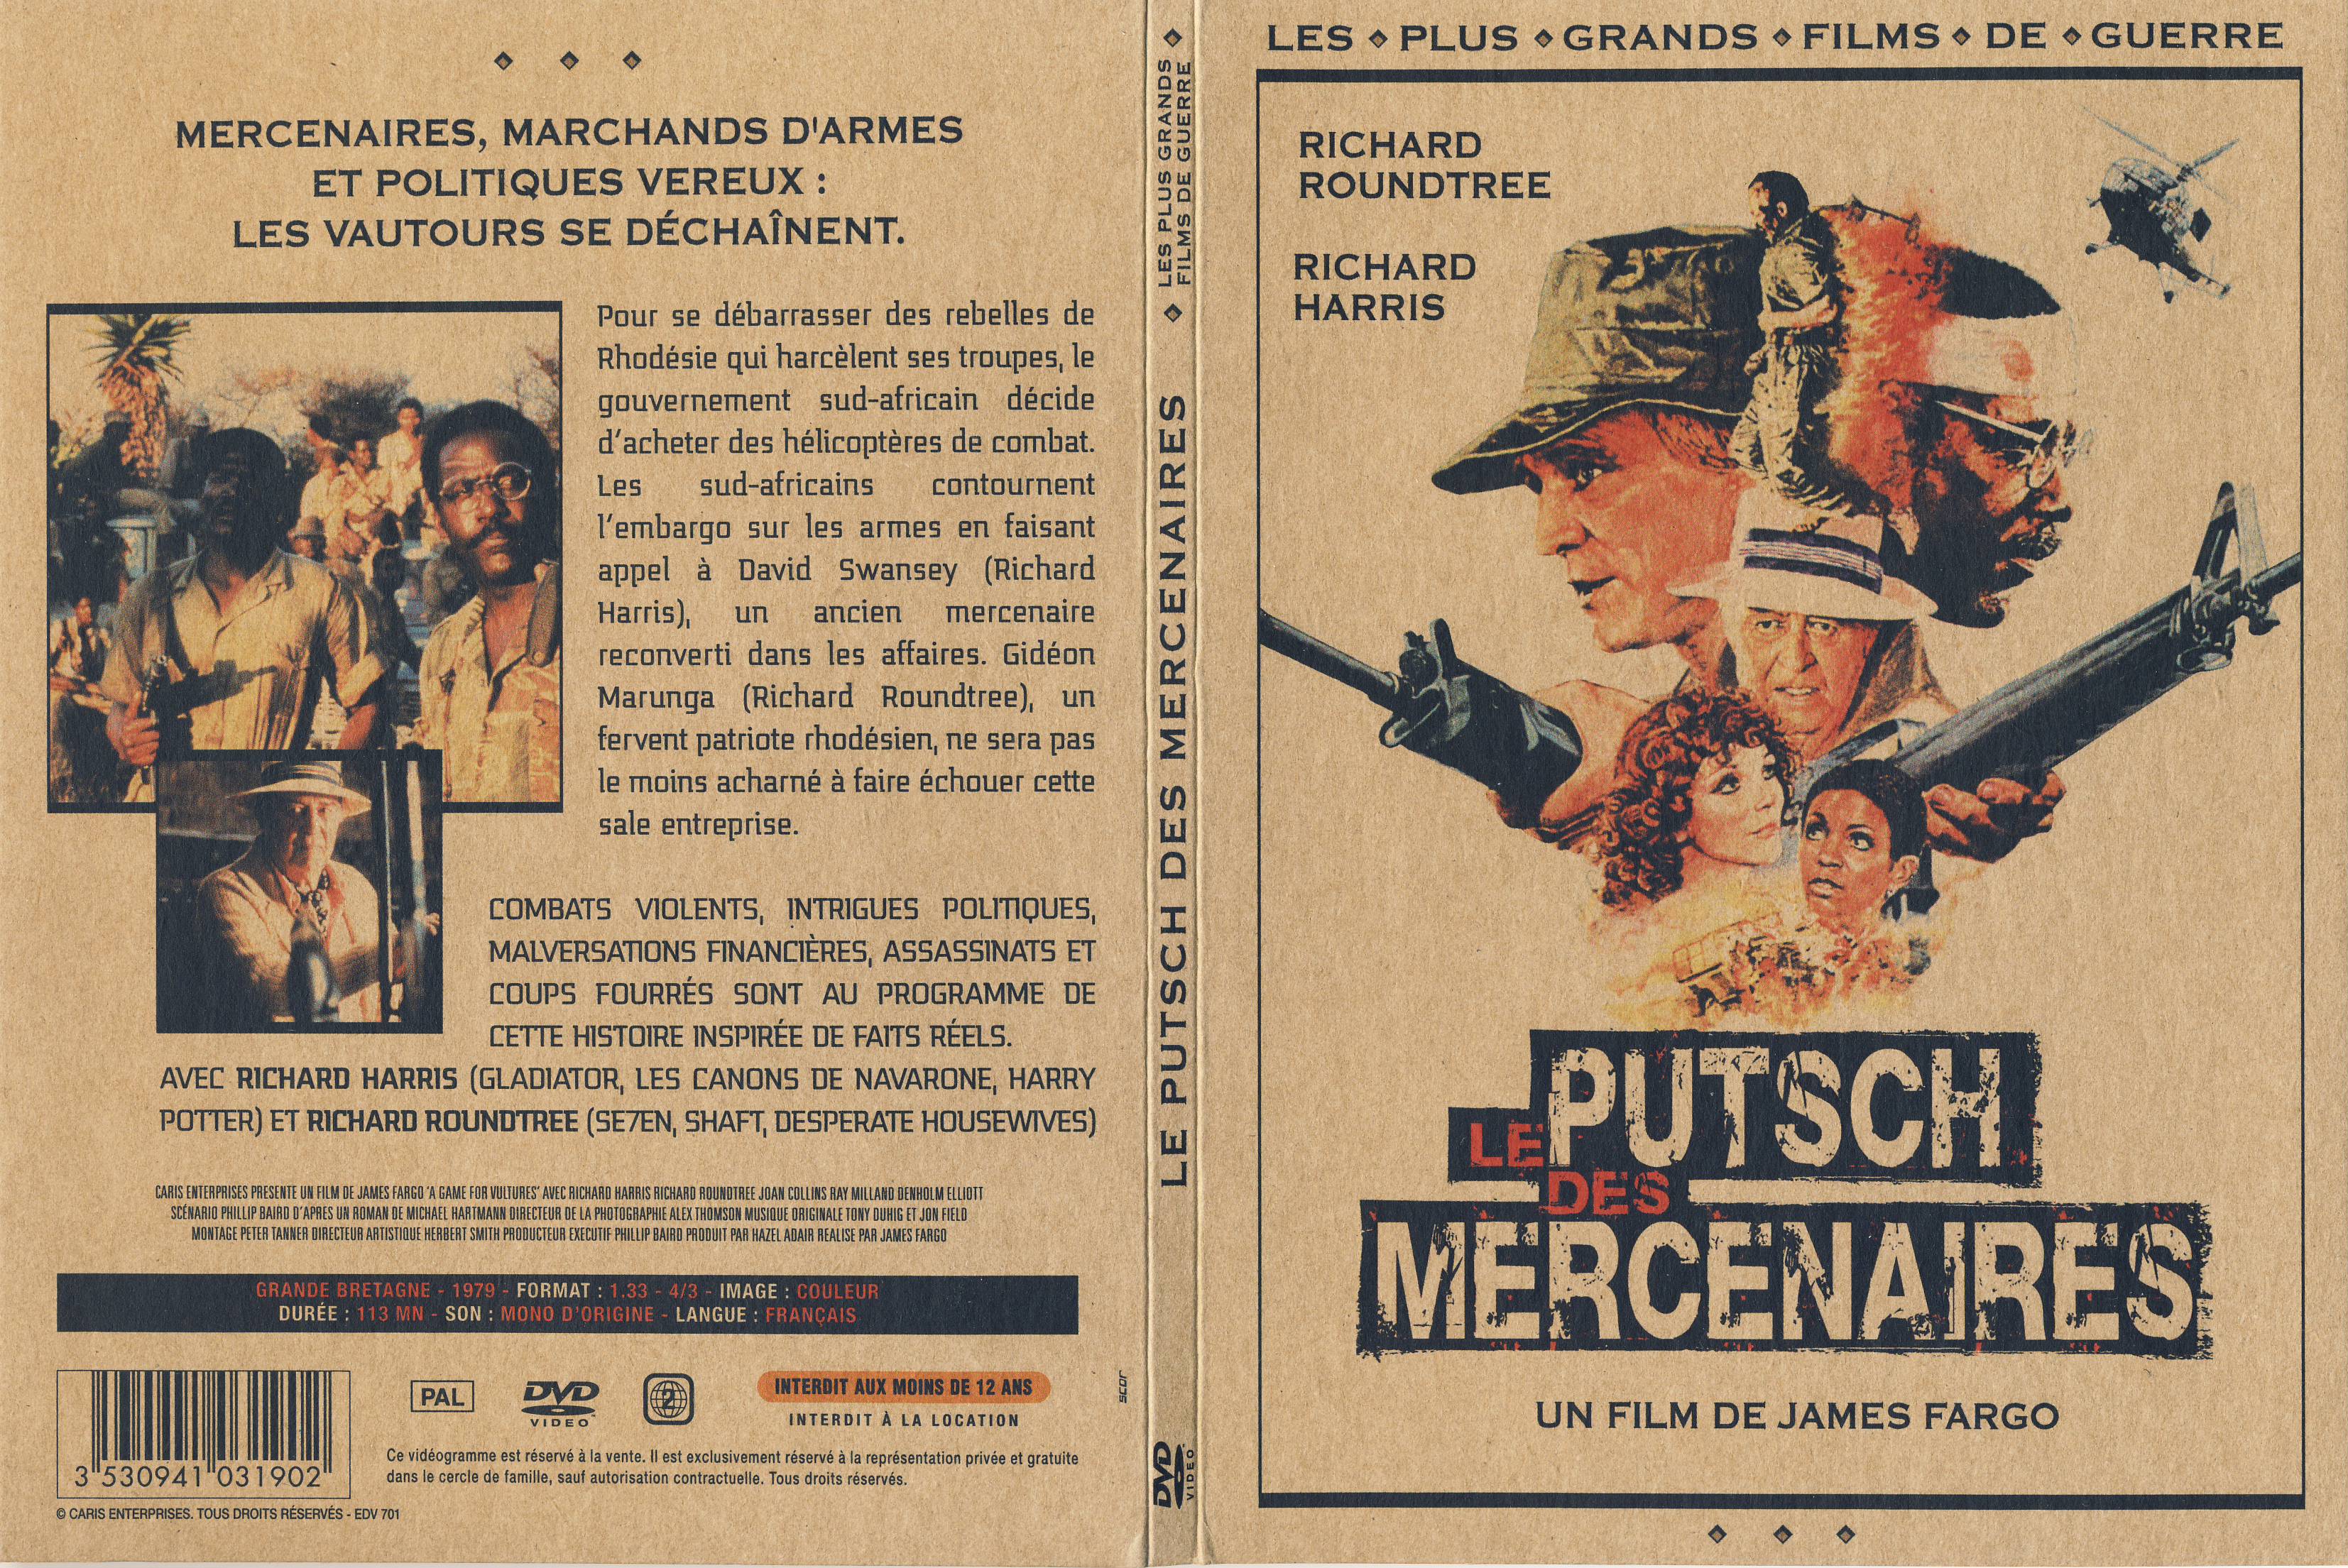 Jaquette DVD Le putsch des mercenaires v2